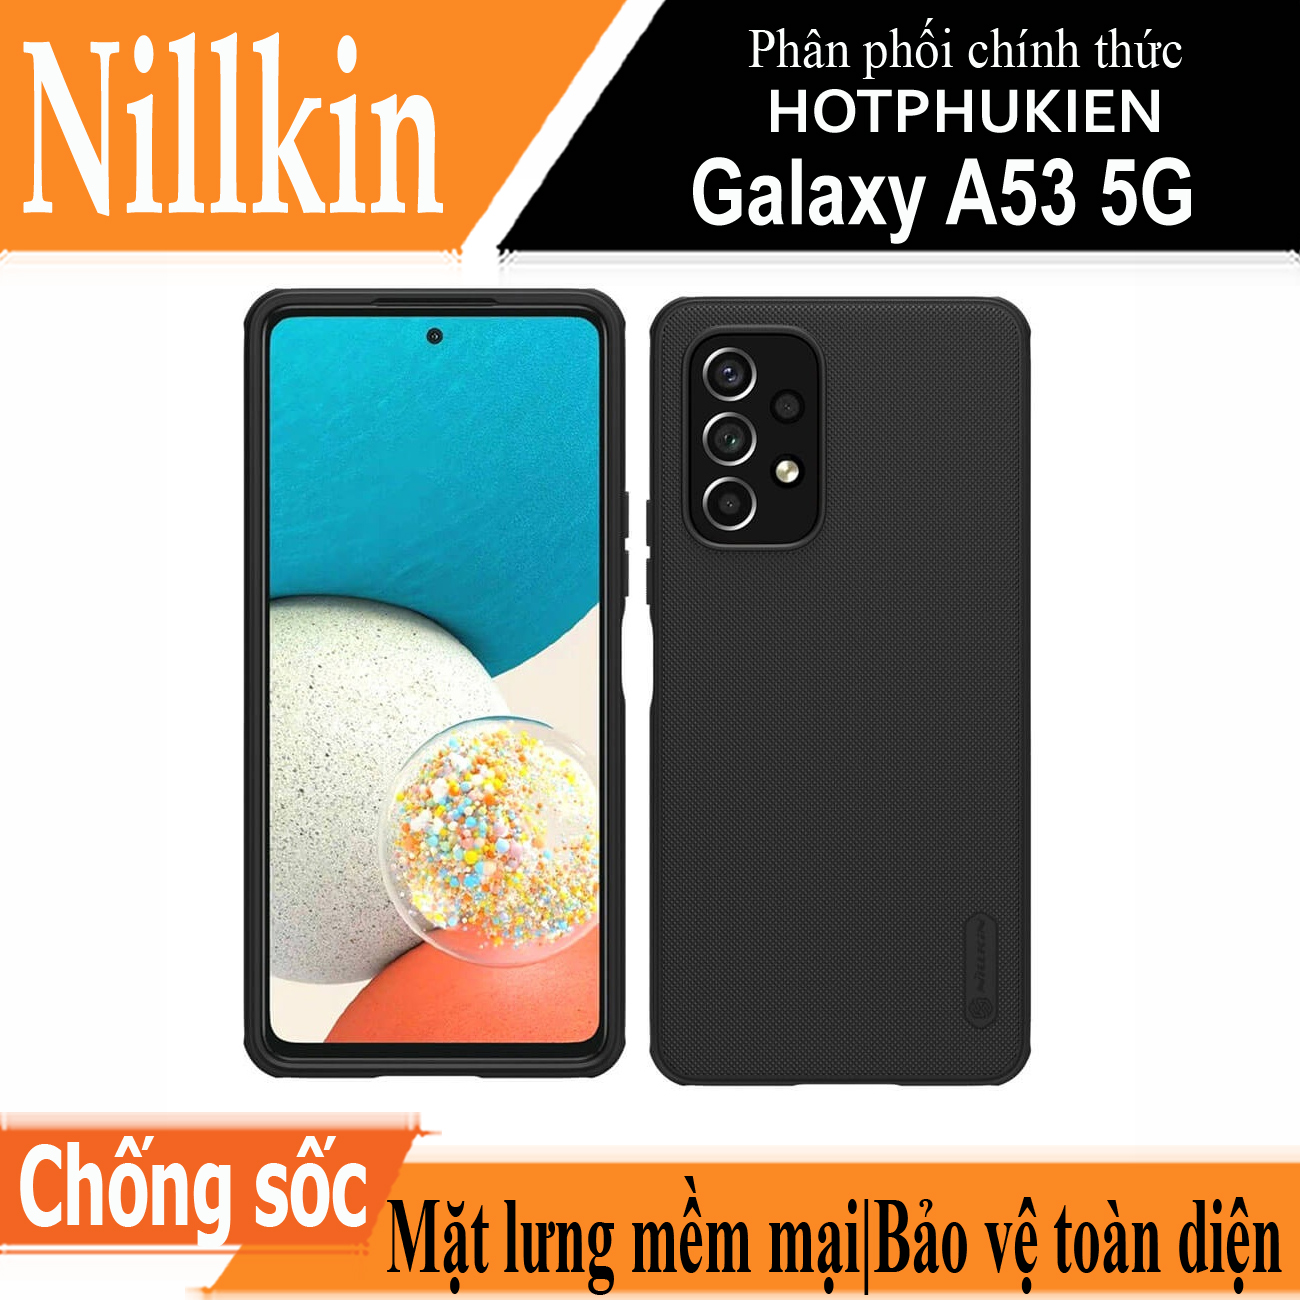 Hình ảnh Ốp lưng sần chống sốc cho Samsung Galaxy A53 5G mặt lưng nhám hiệu Nillkin Super Frosted Shield Pro cho khả năng chống sốc cực tốt, chất liệu cao cấp, mặt lưng nhám sang trọng - hàng nhập khẩu